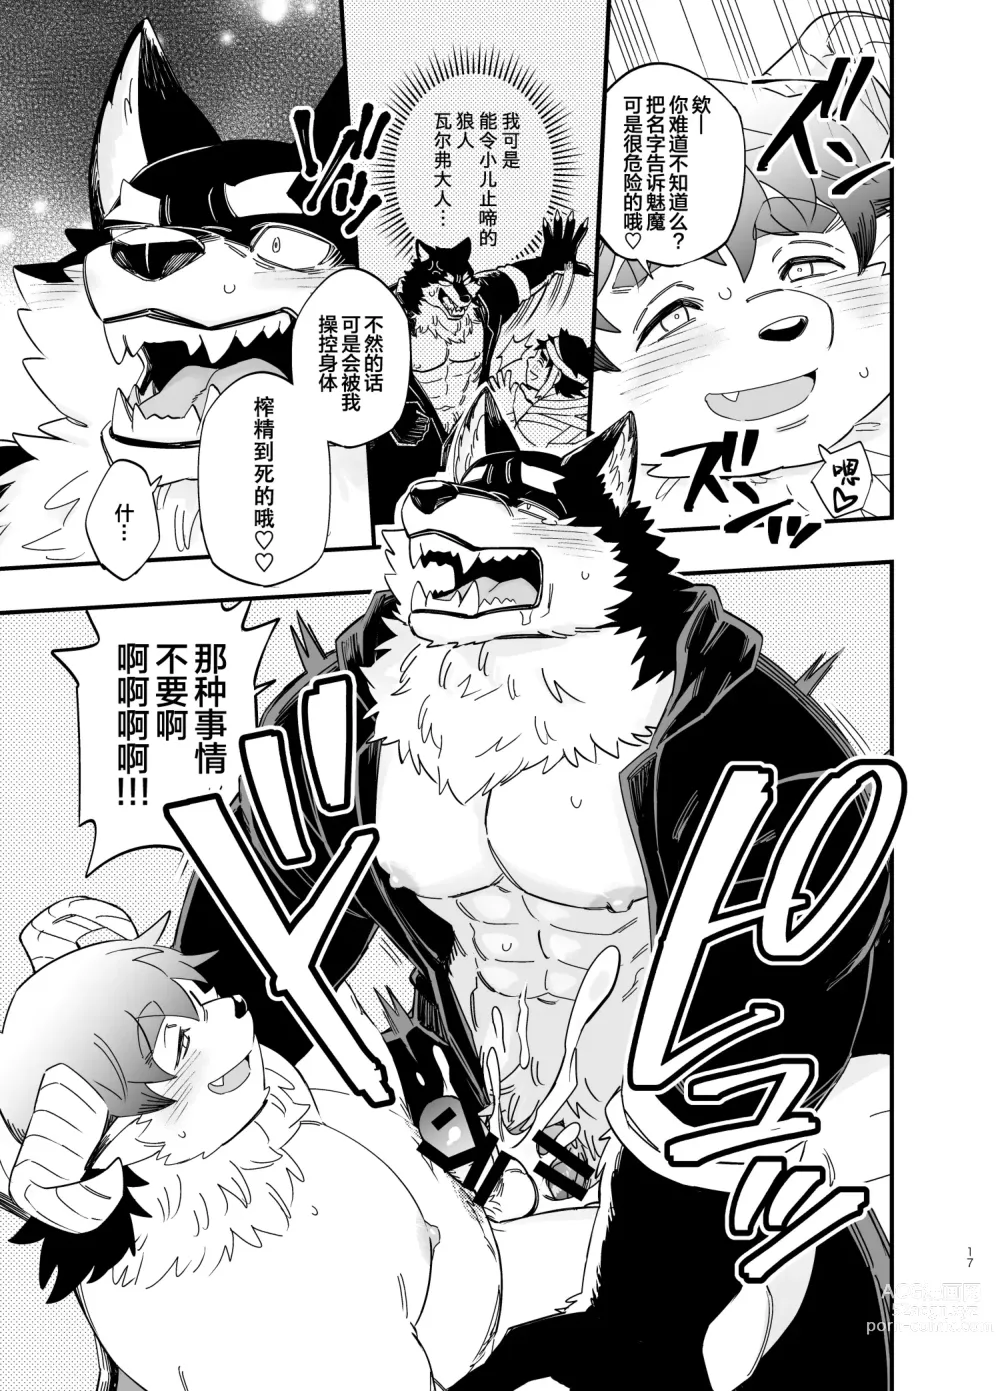 Page 18 of manga オオカミなんかこわくない！